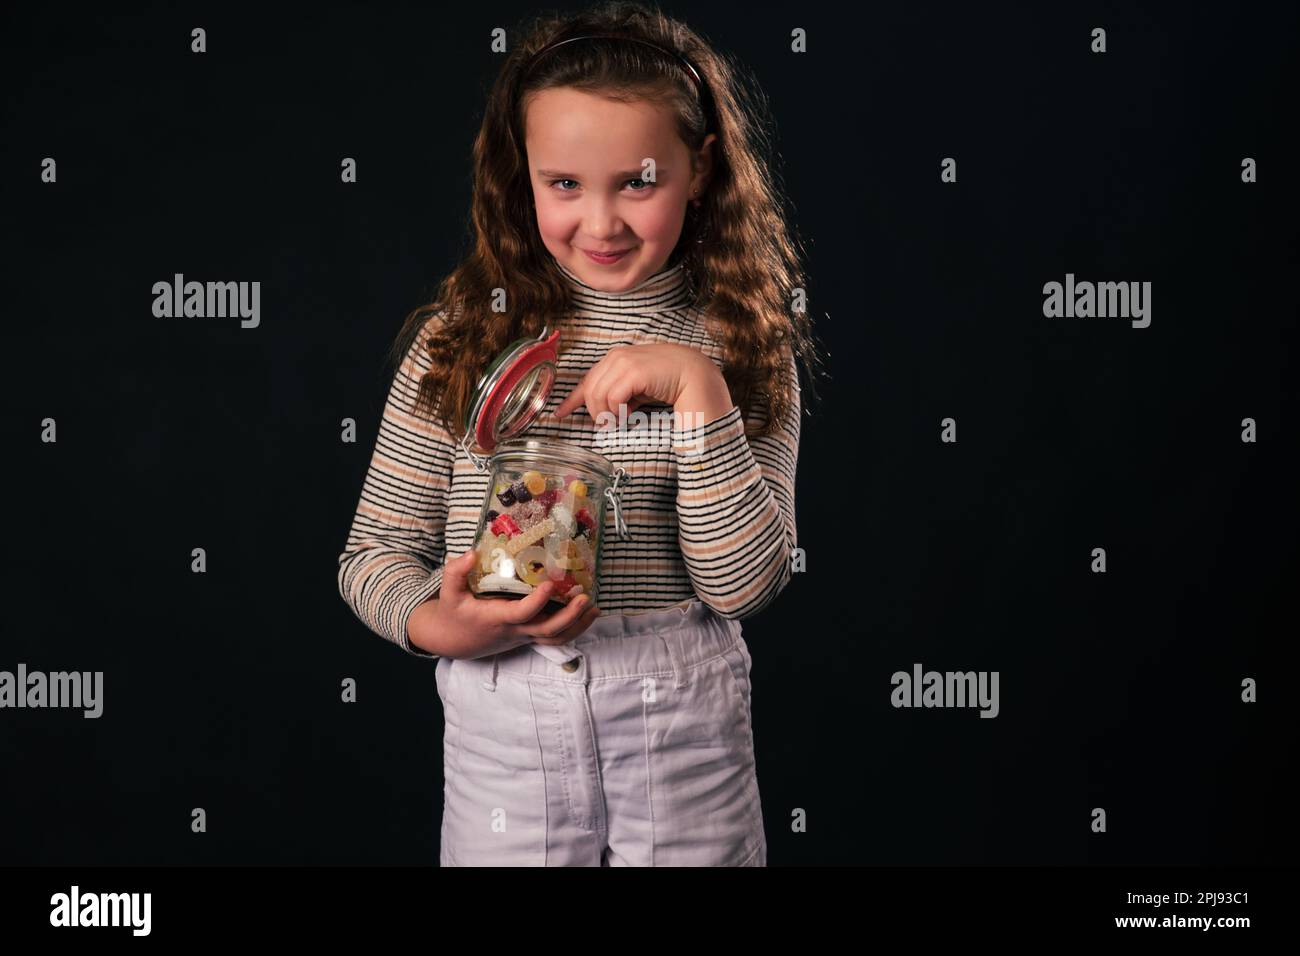 8-jähriges Mädchen hält ein Glasgefäß mit bunten Süßigkeiten, zeigt mit einem unartigen Lächeln auf Süßigkeiten, während es in die Kamera schaut. Isoliert auf dunklem Hintergrund Stockfoto